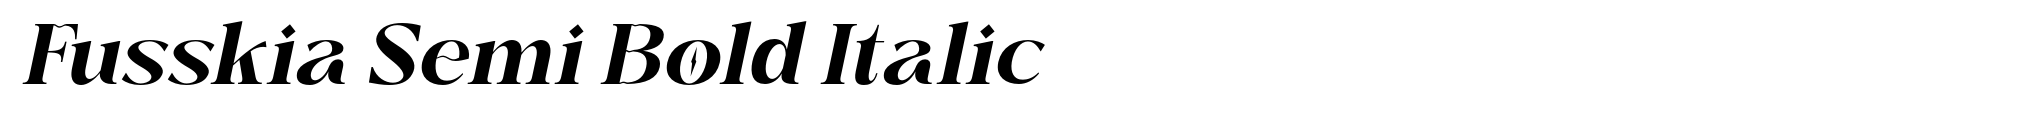 Fusskia Semi Bold Italic image